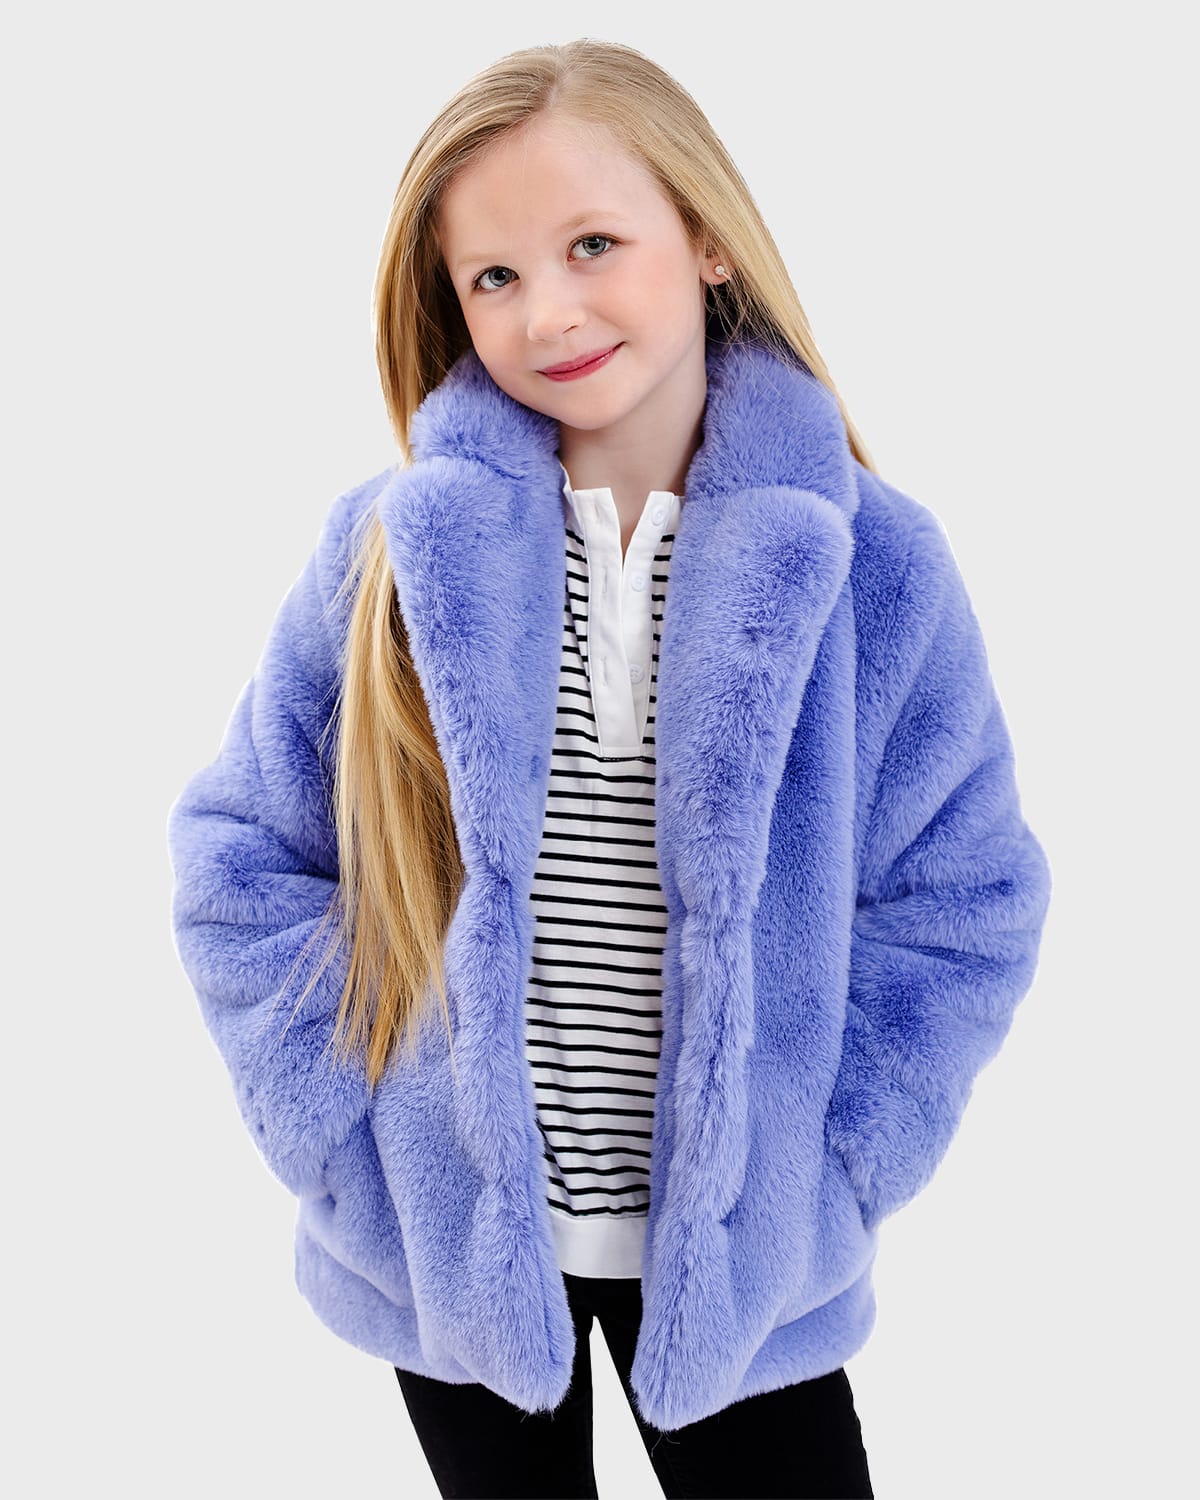 Fabulous Furs Kids' Girl's Mini Le Mink Faux Fur Jacket In Peri